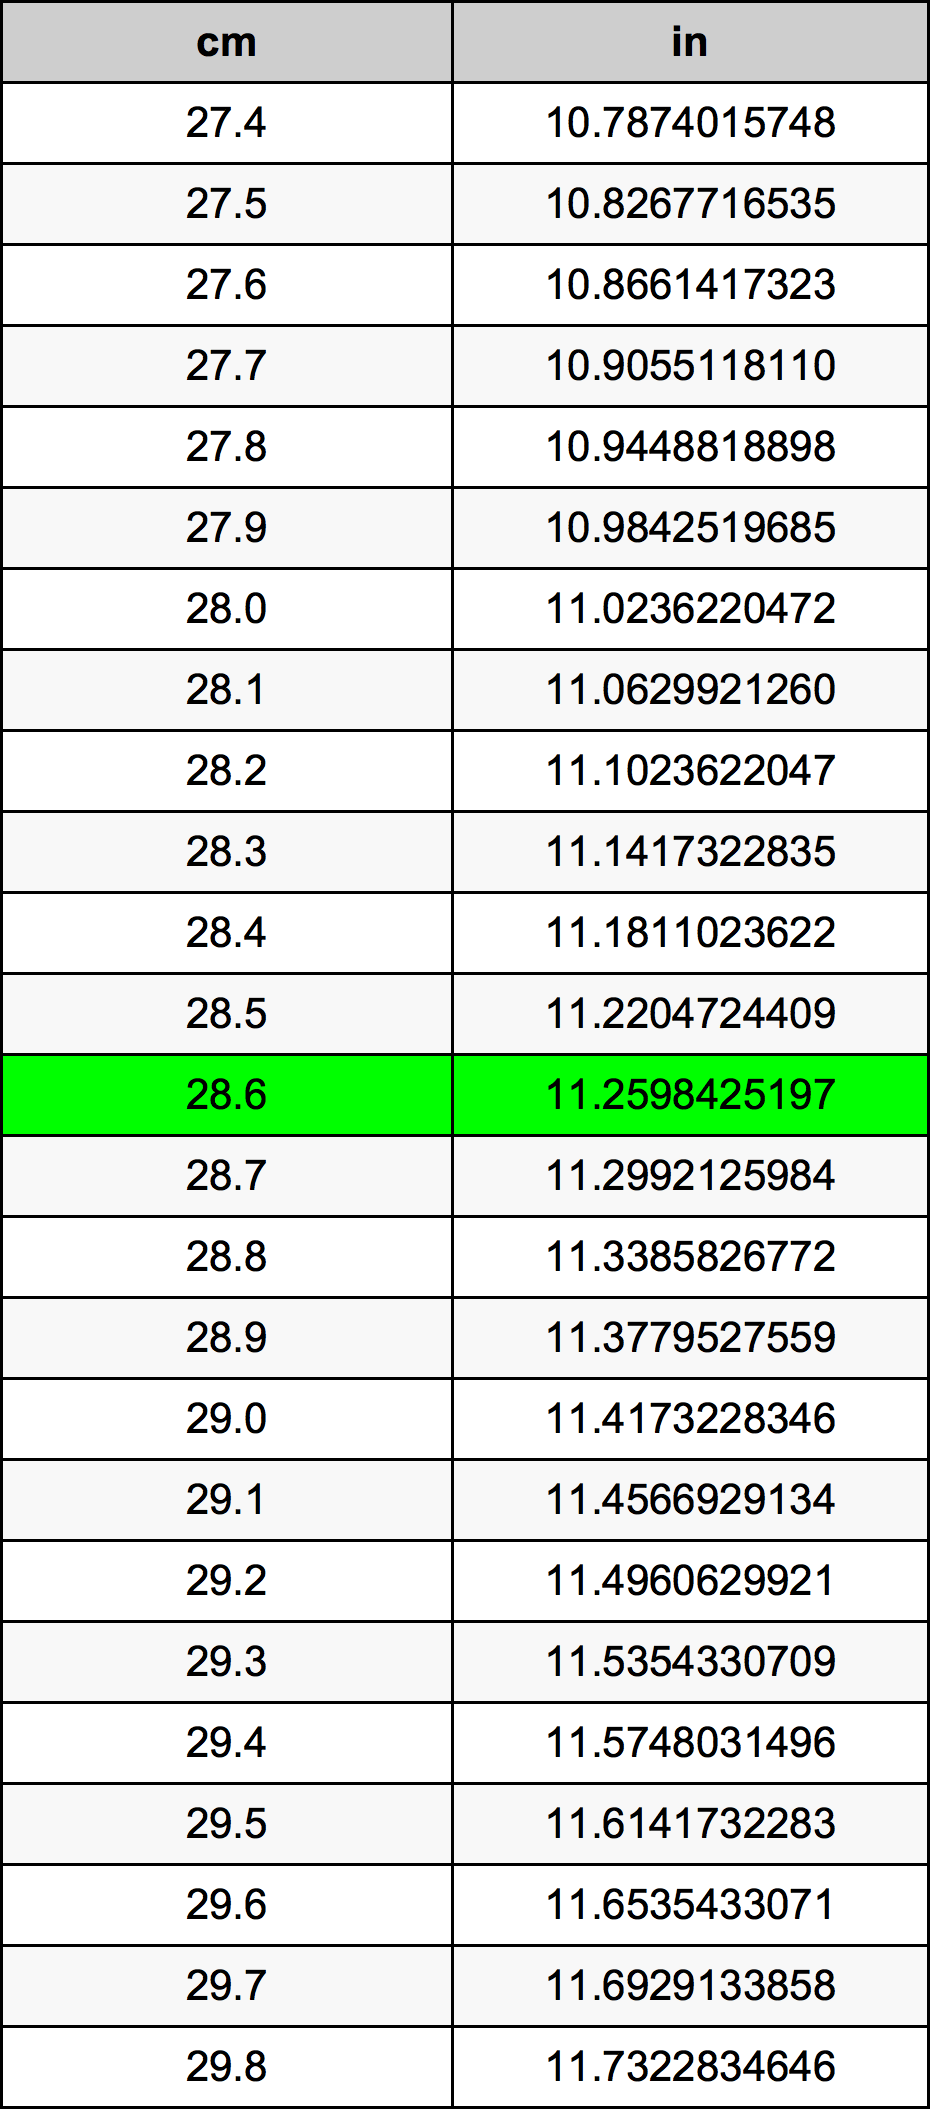 28.6 Centiméter átszámítási táblázat